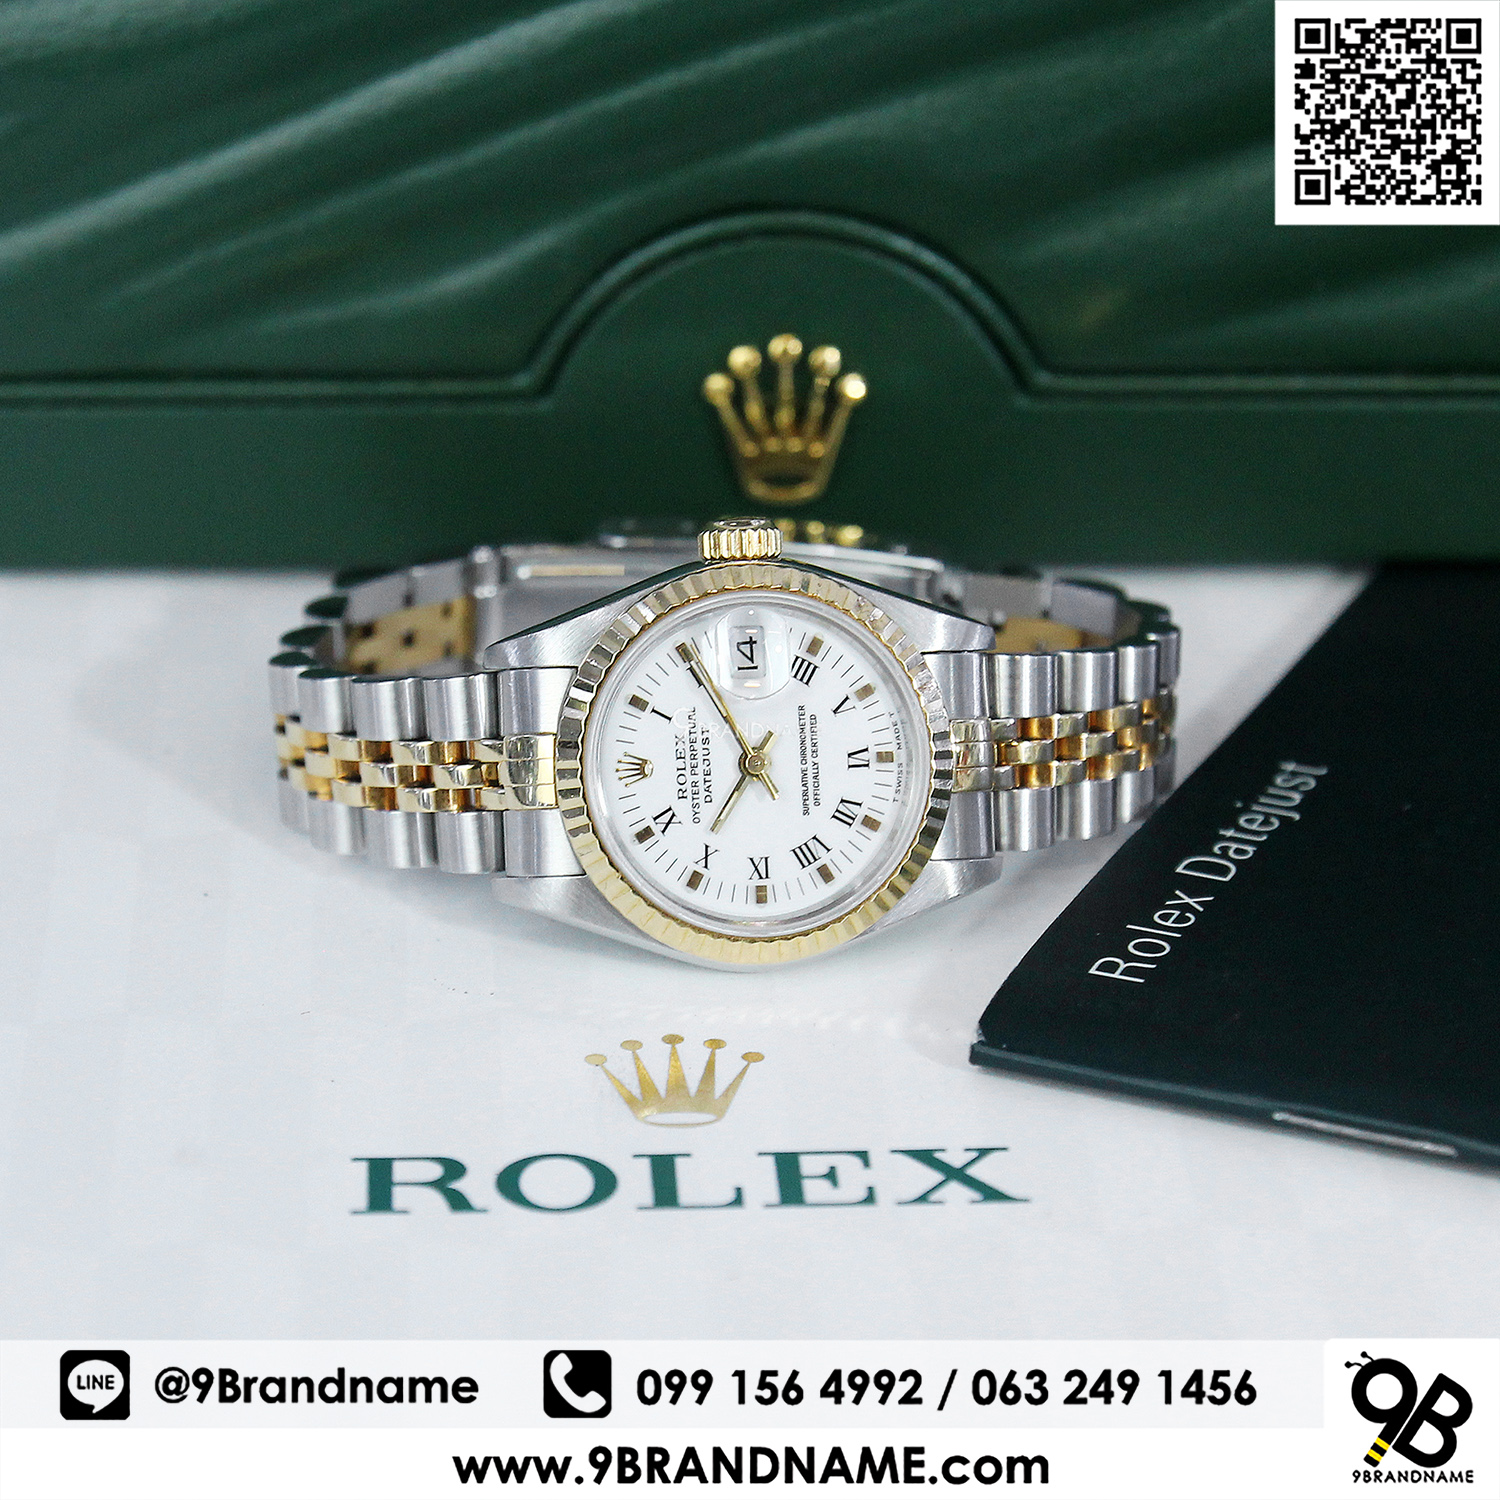 Rolex Datejust Jubilee 2k Roman Lady Size 26mm 9brandname